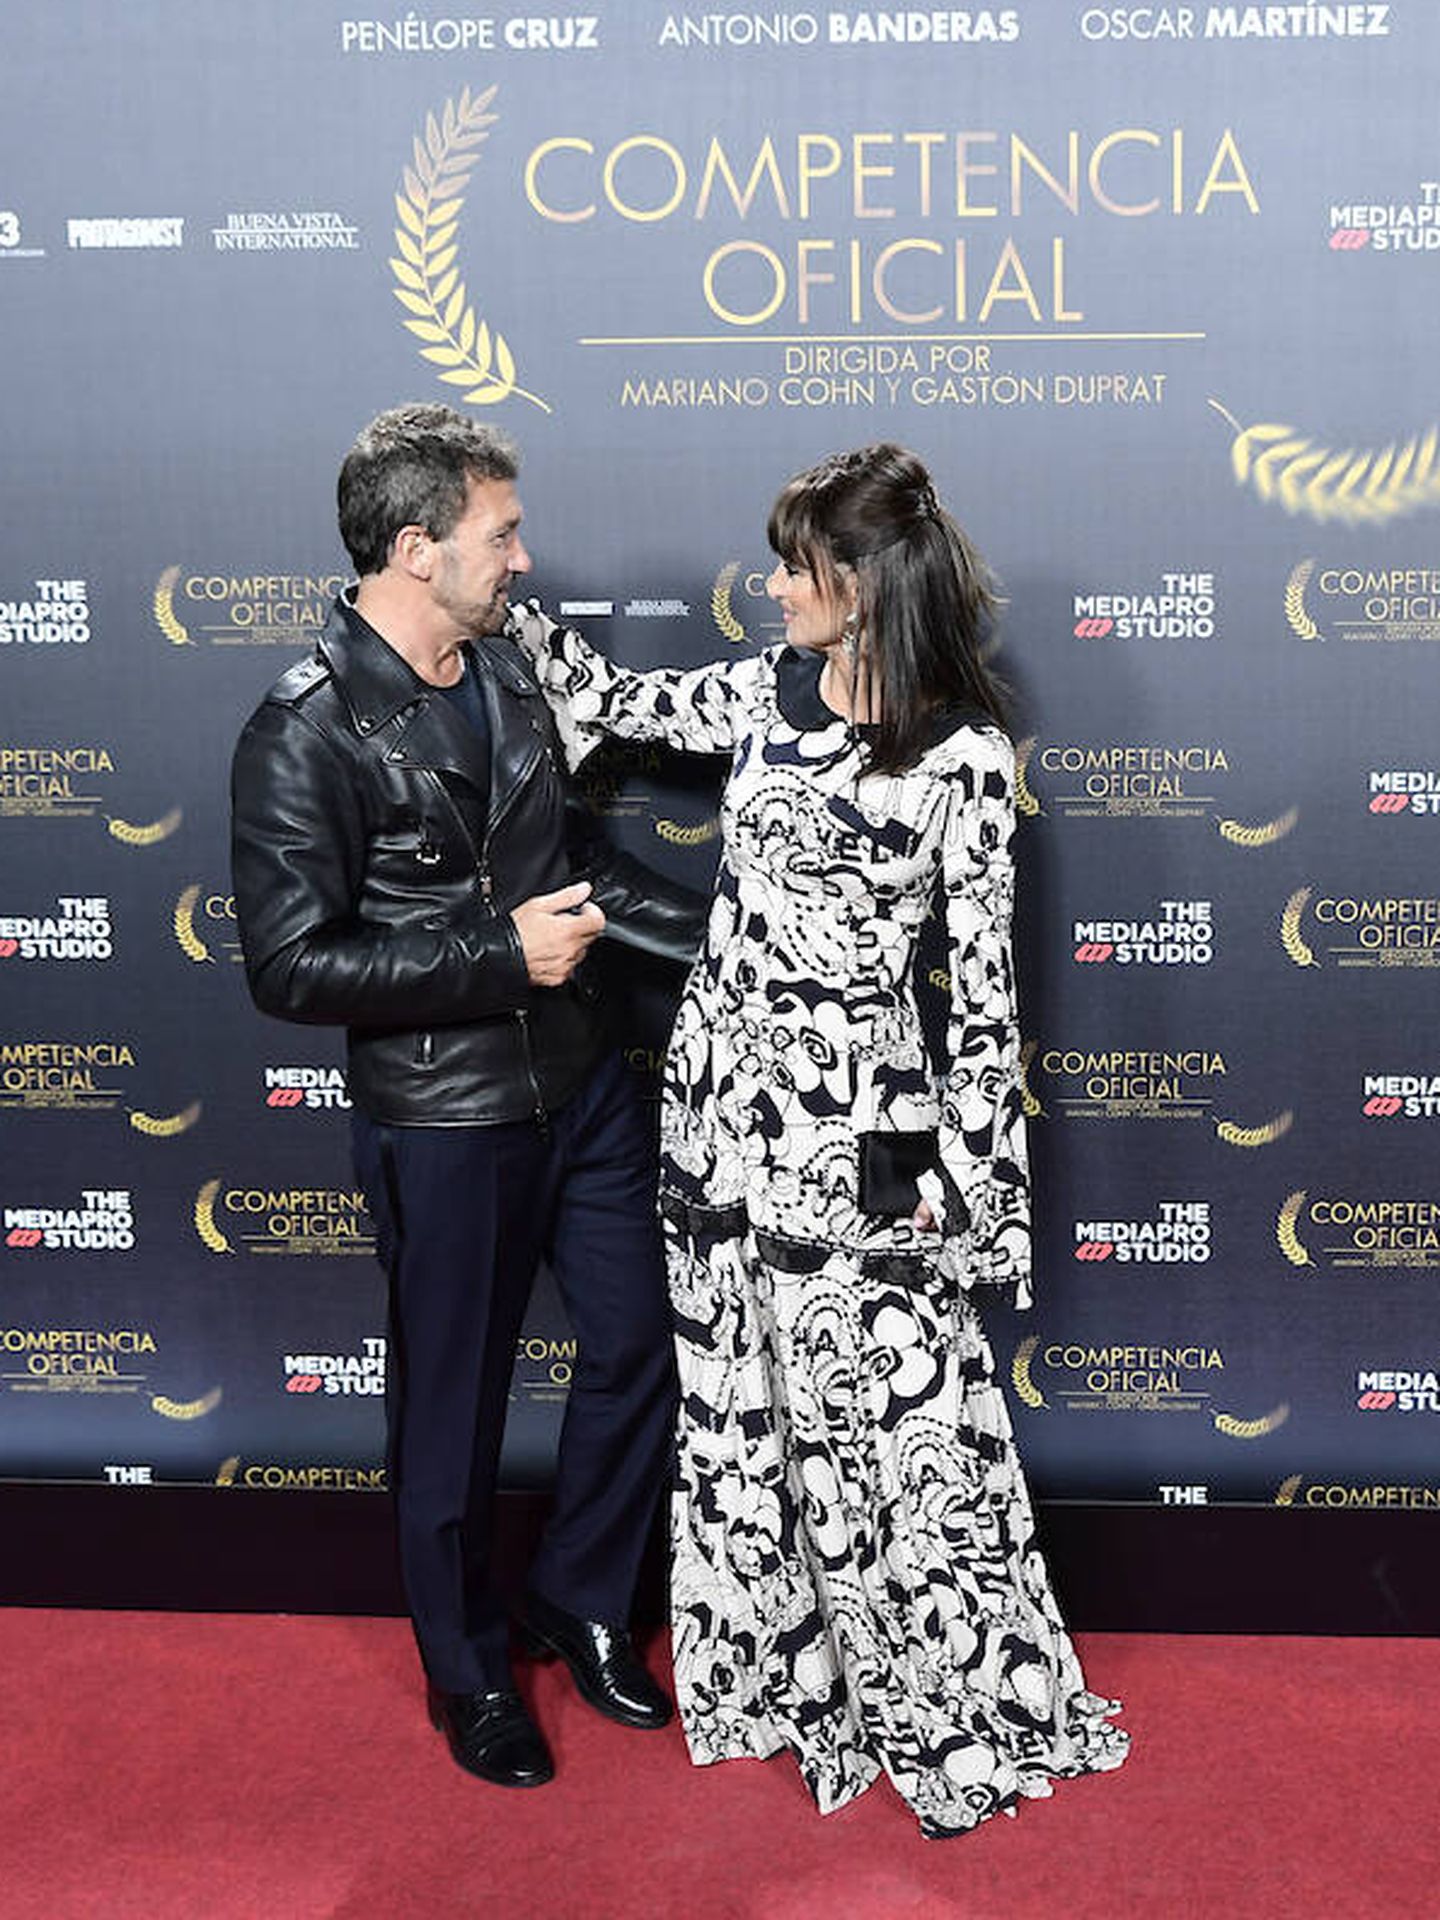 Penélope Cruz posa junto a Antonio Banderas, también protagonista de 'Competencia oficial'. (Limited Pictures)